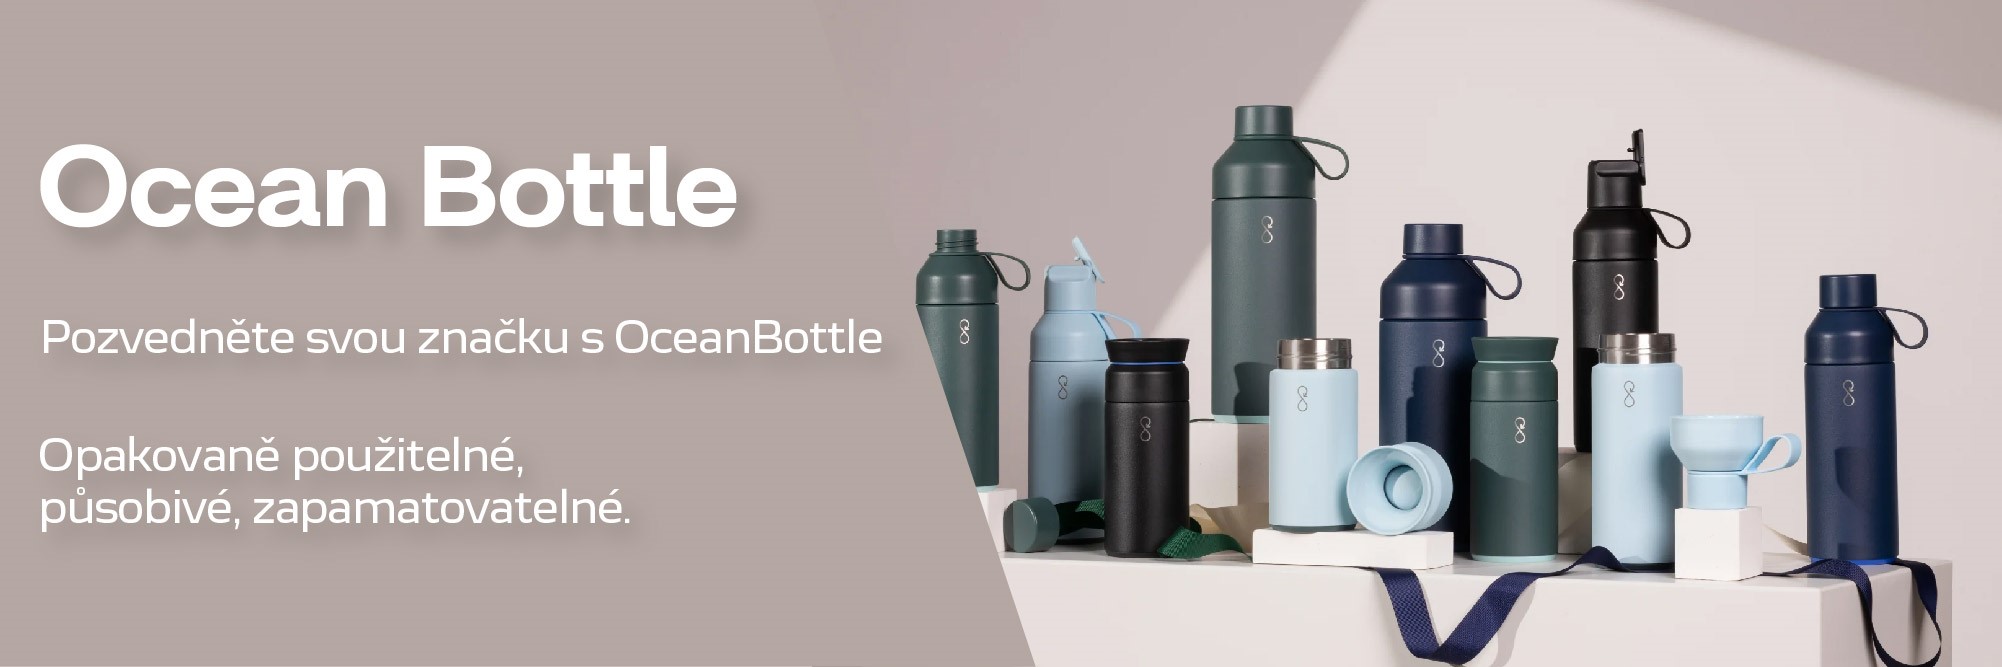 banner-web_Ocean Bottle.jpg